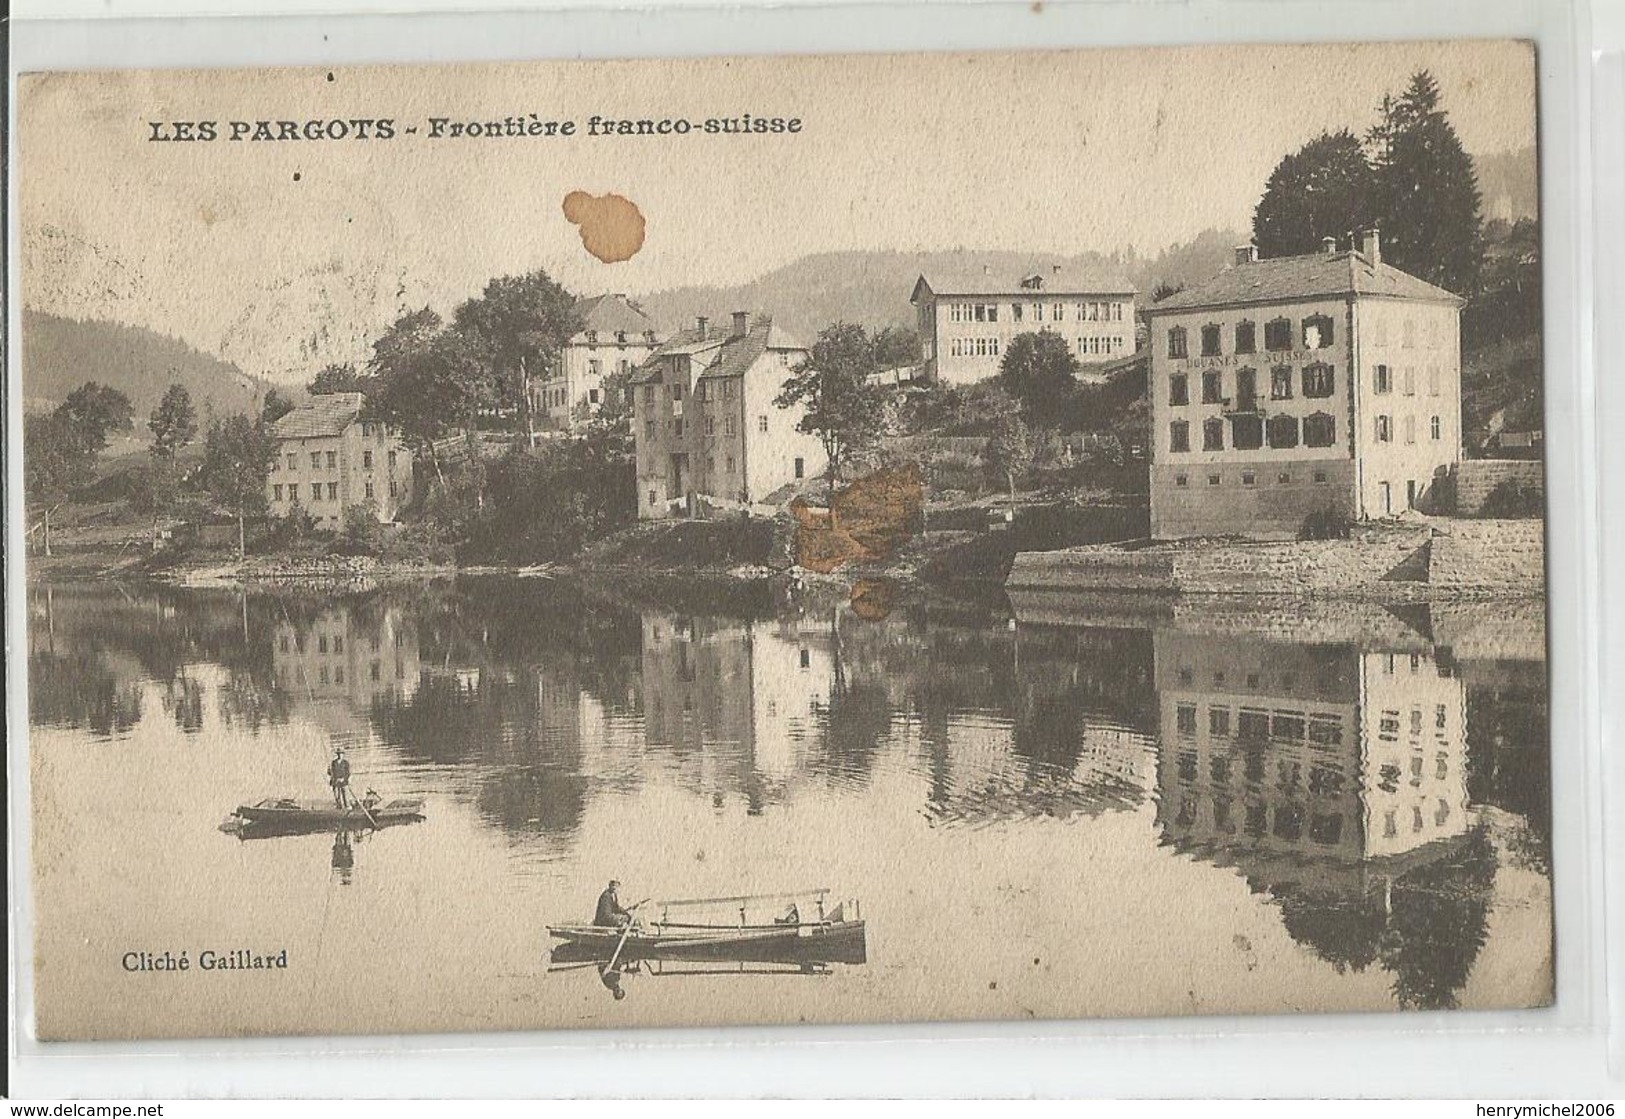 Suisse Neuchatel - Les Fargots Frontière Franco - Douane 1912 - Neuchâtel